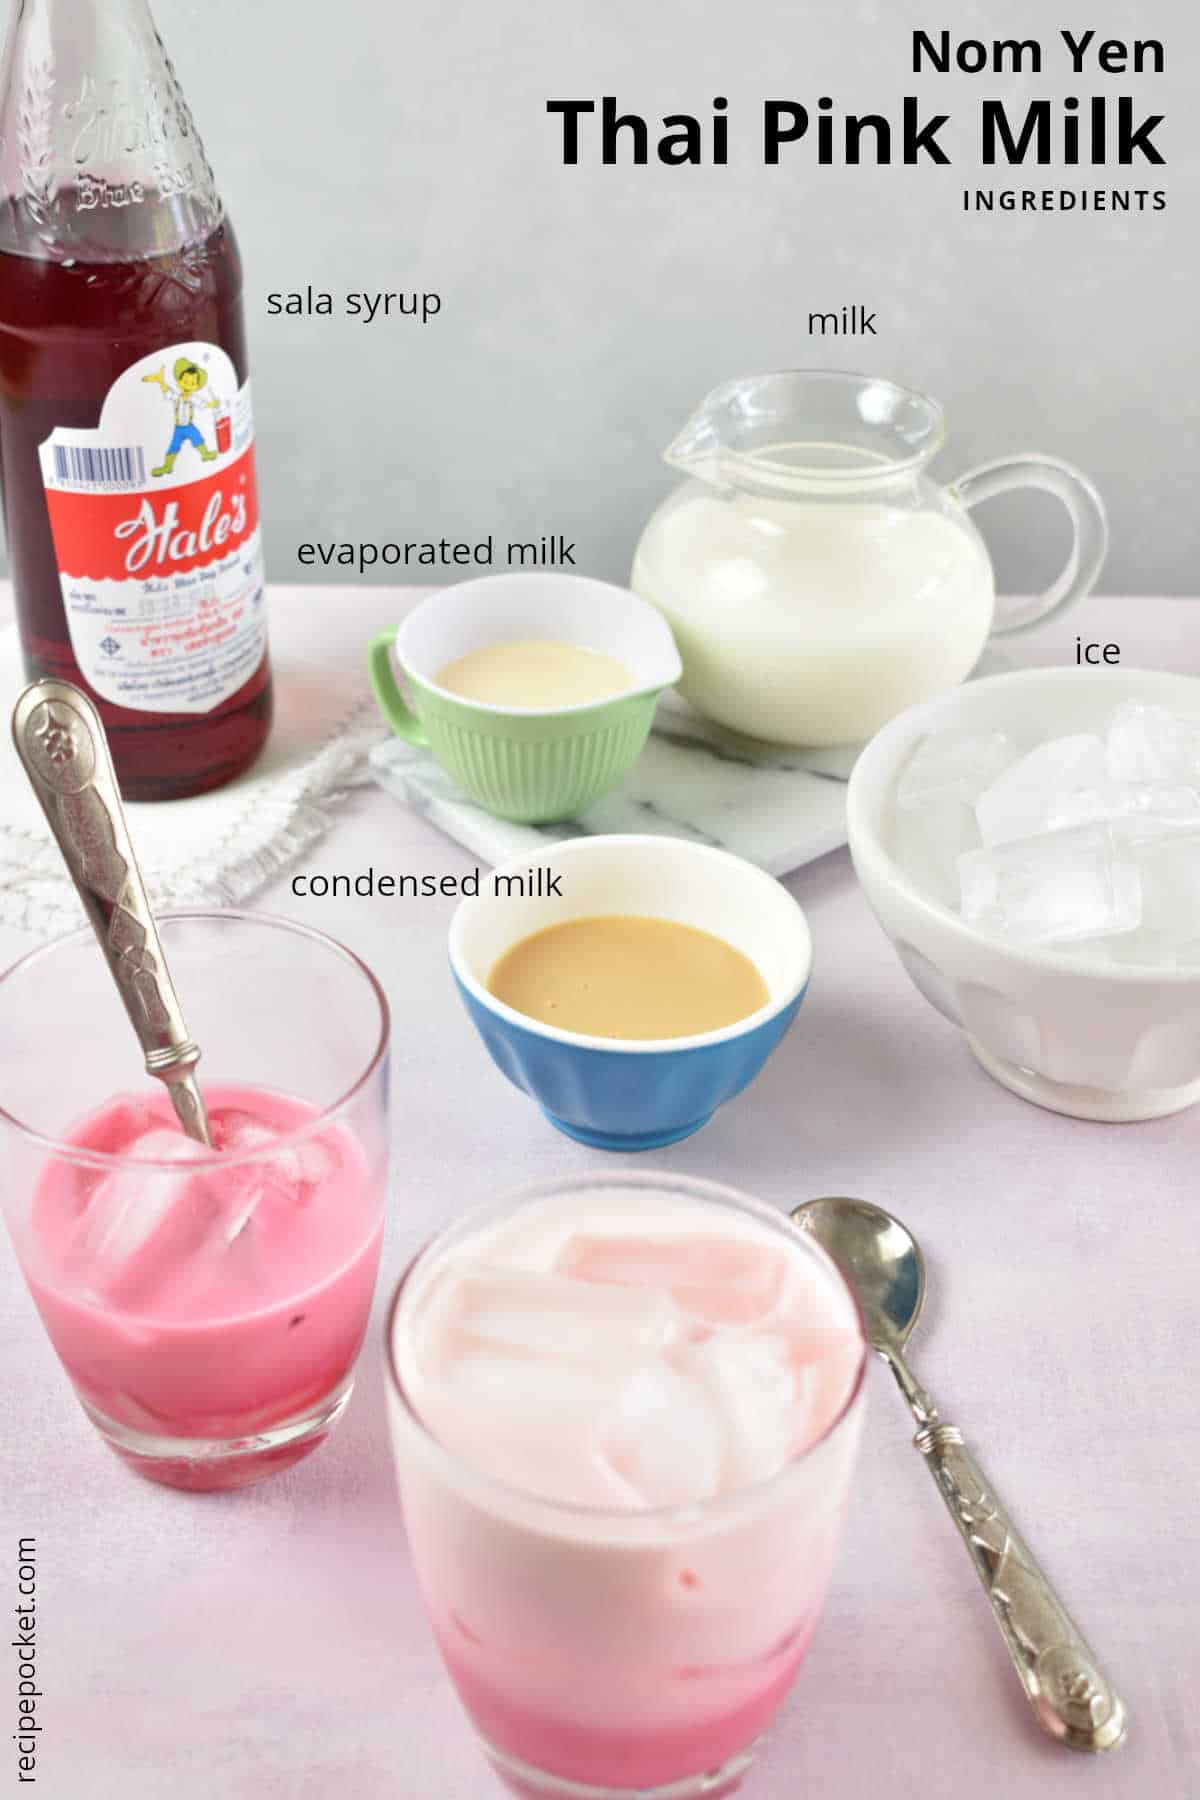 Image showing ingredients to make pink milk.